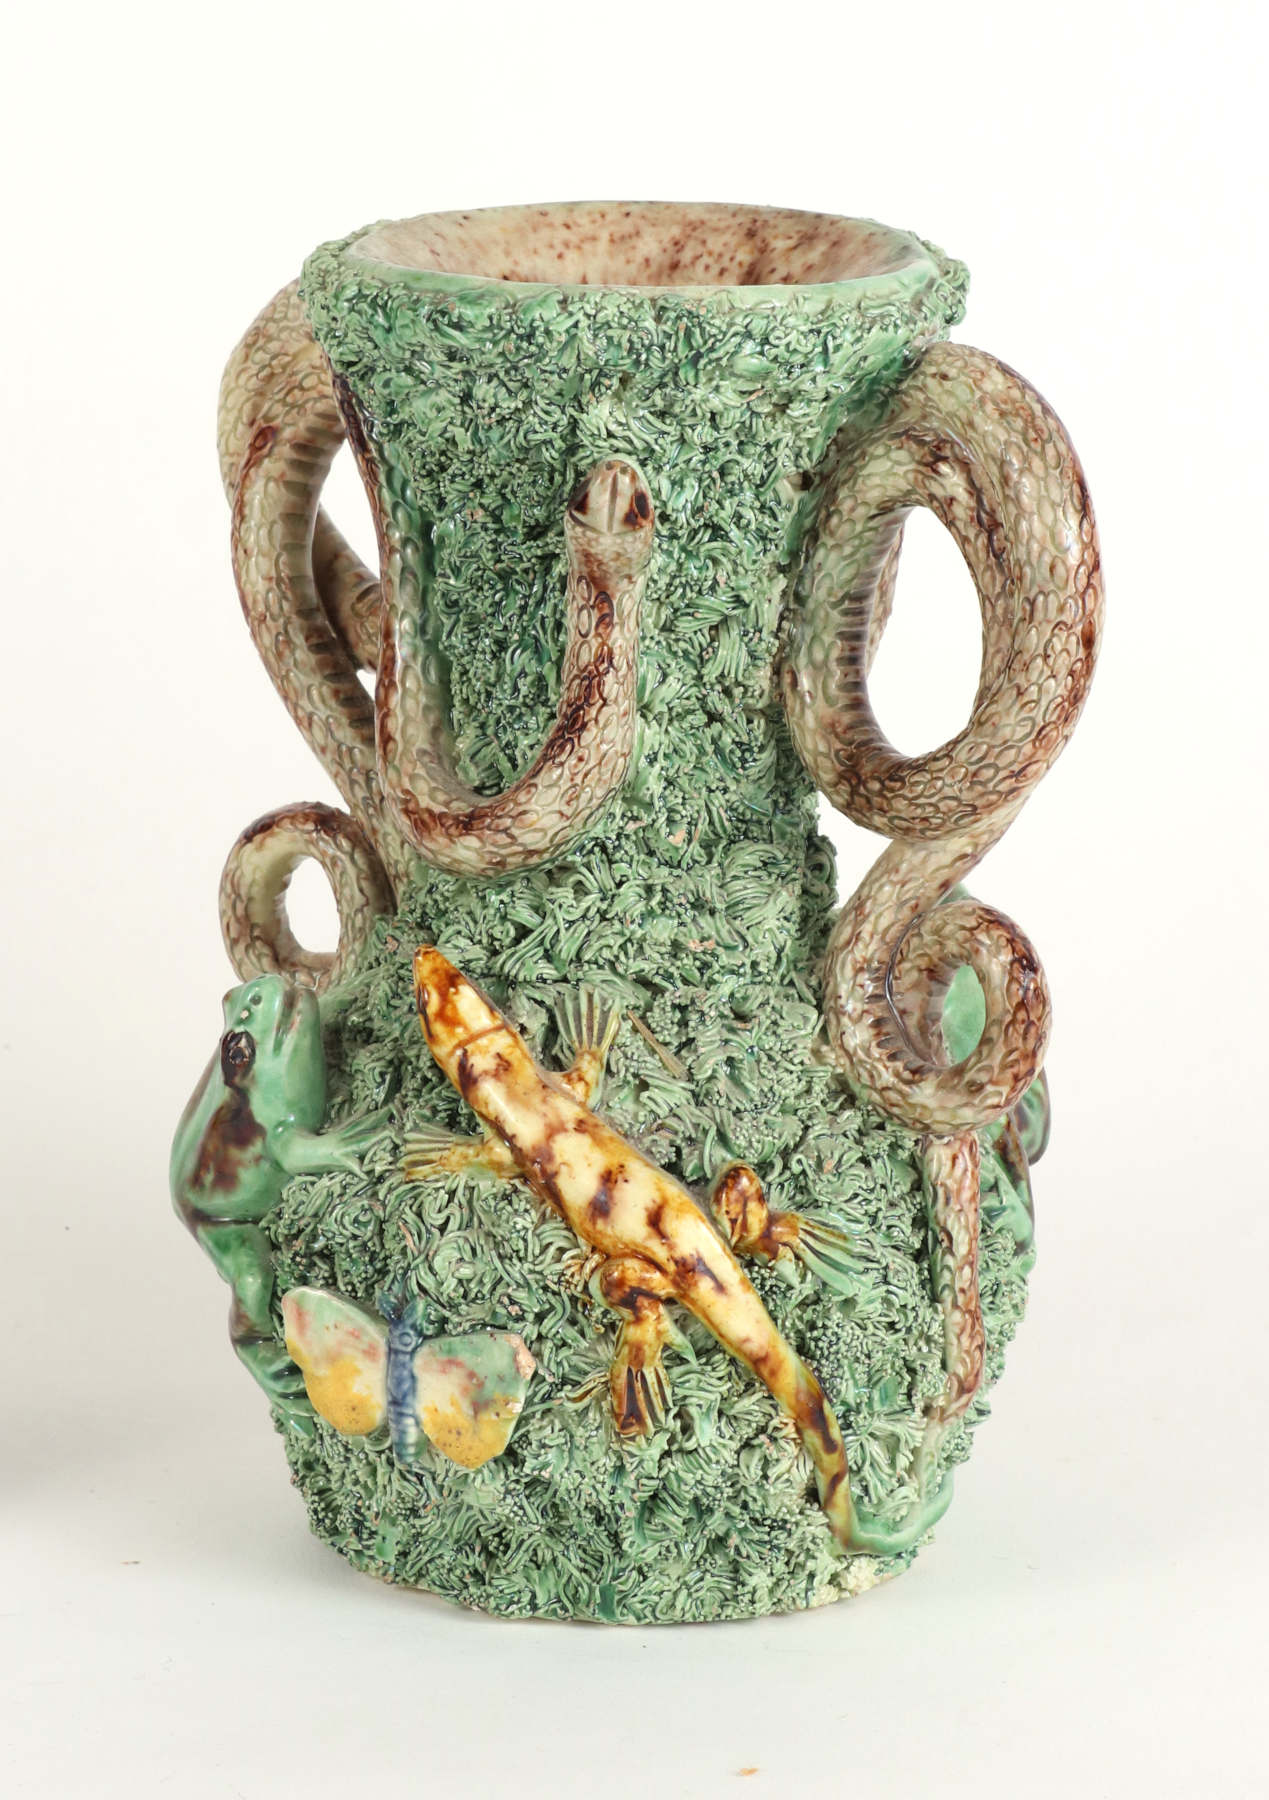 Palissy Ware Vase, c.1880